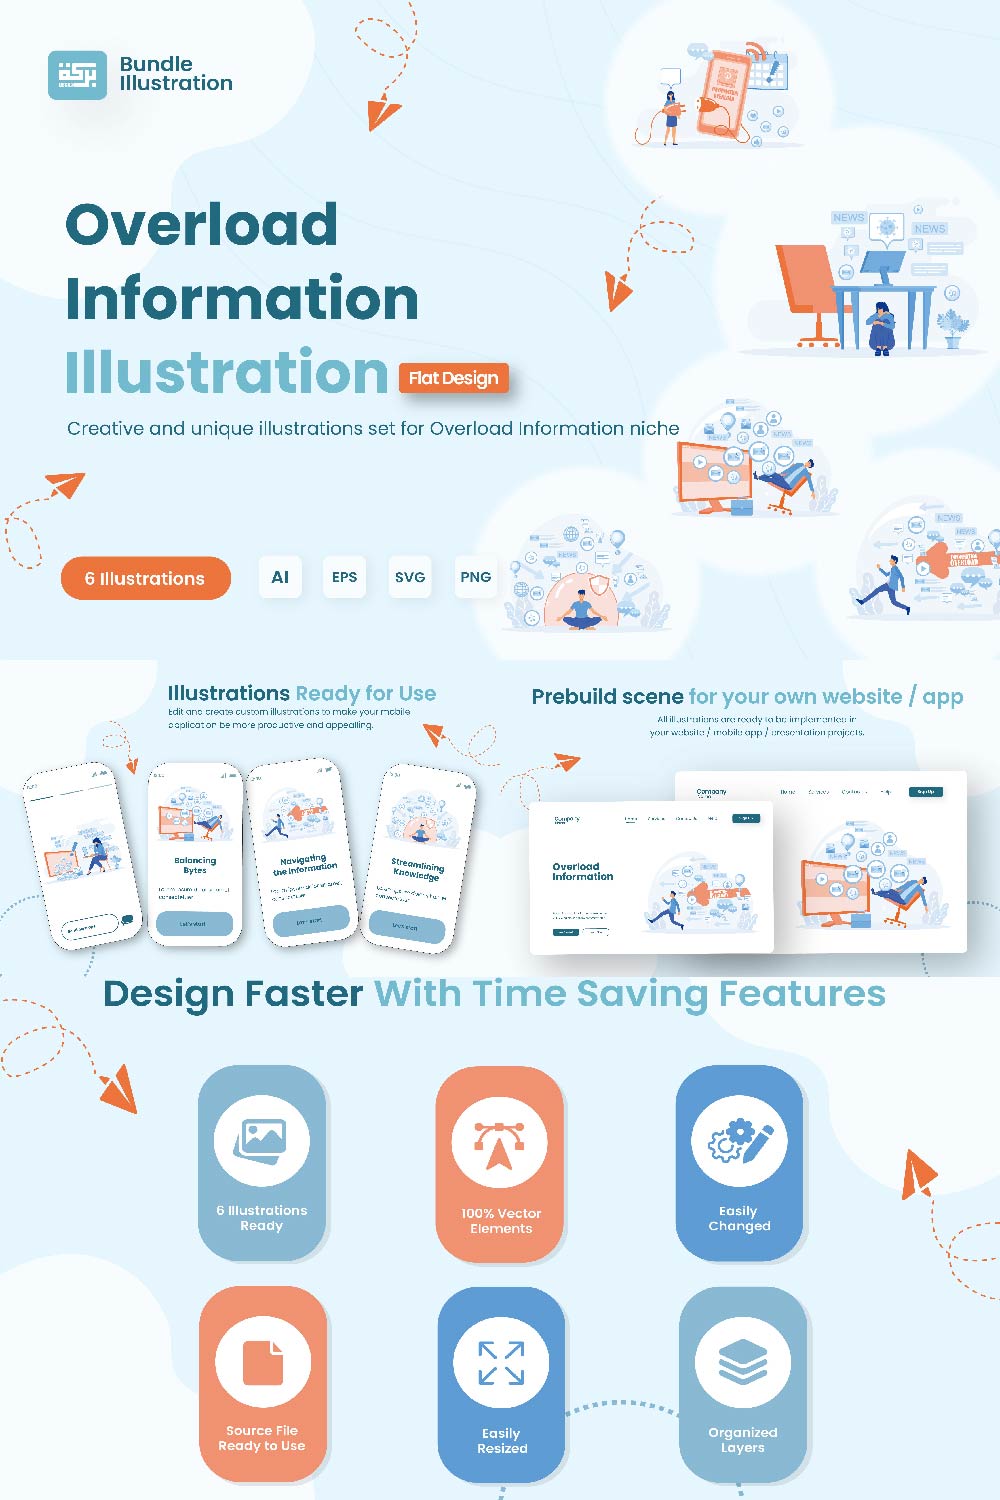 Overload Information Illustration Design pinterest preview image.